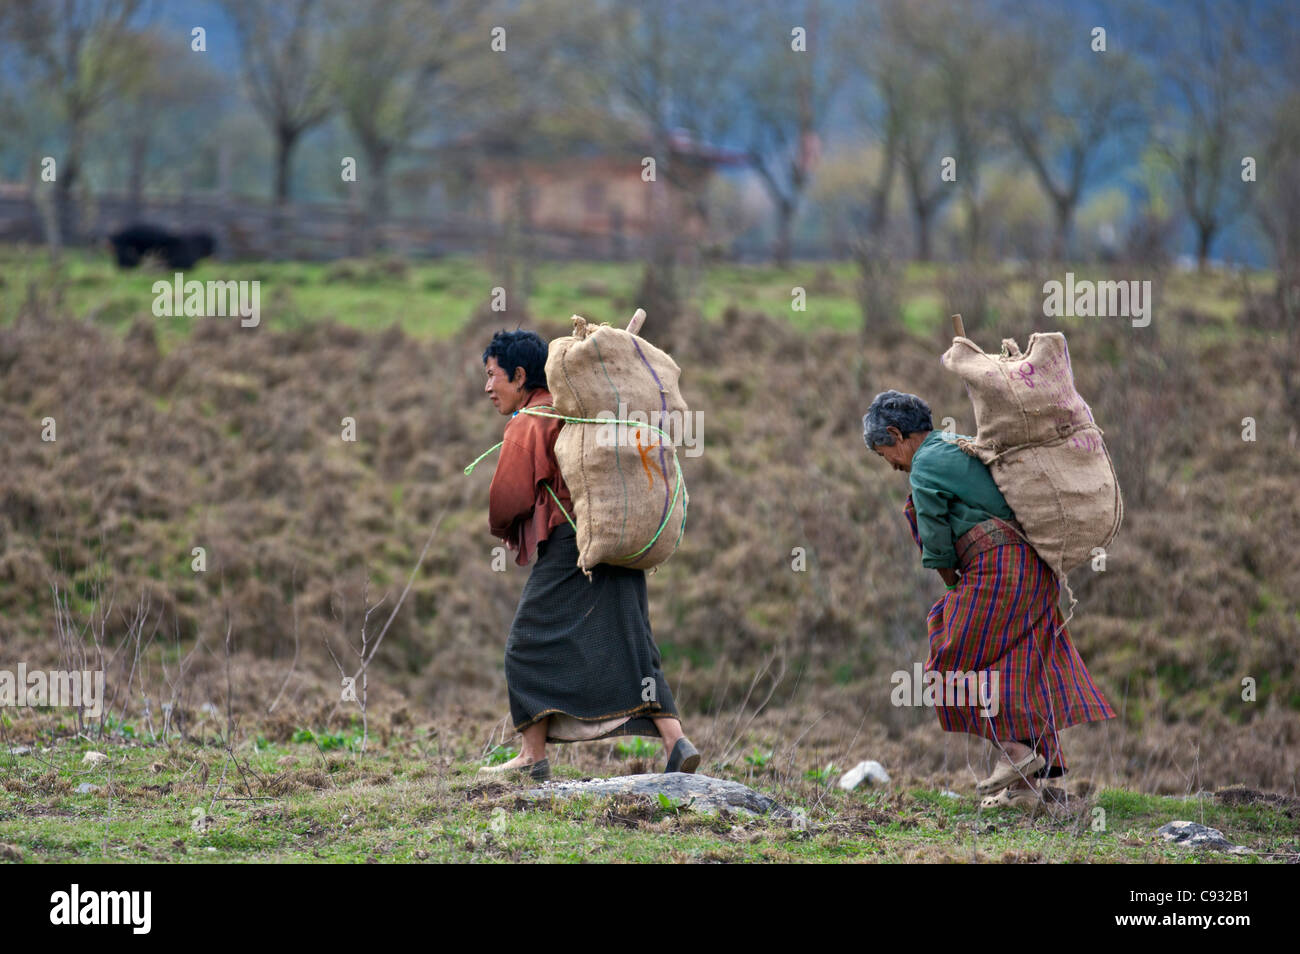 Las mujeres vuelven a casa cargados de producir después de trabajar en sus campos en el fértil valle de Phobjikha. Foto de stock